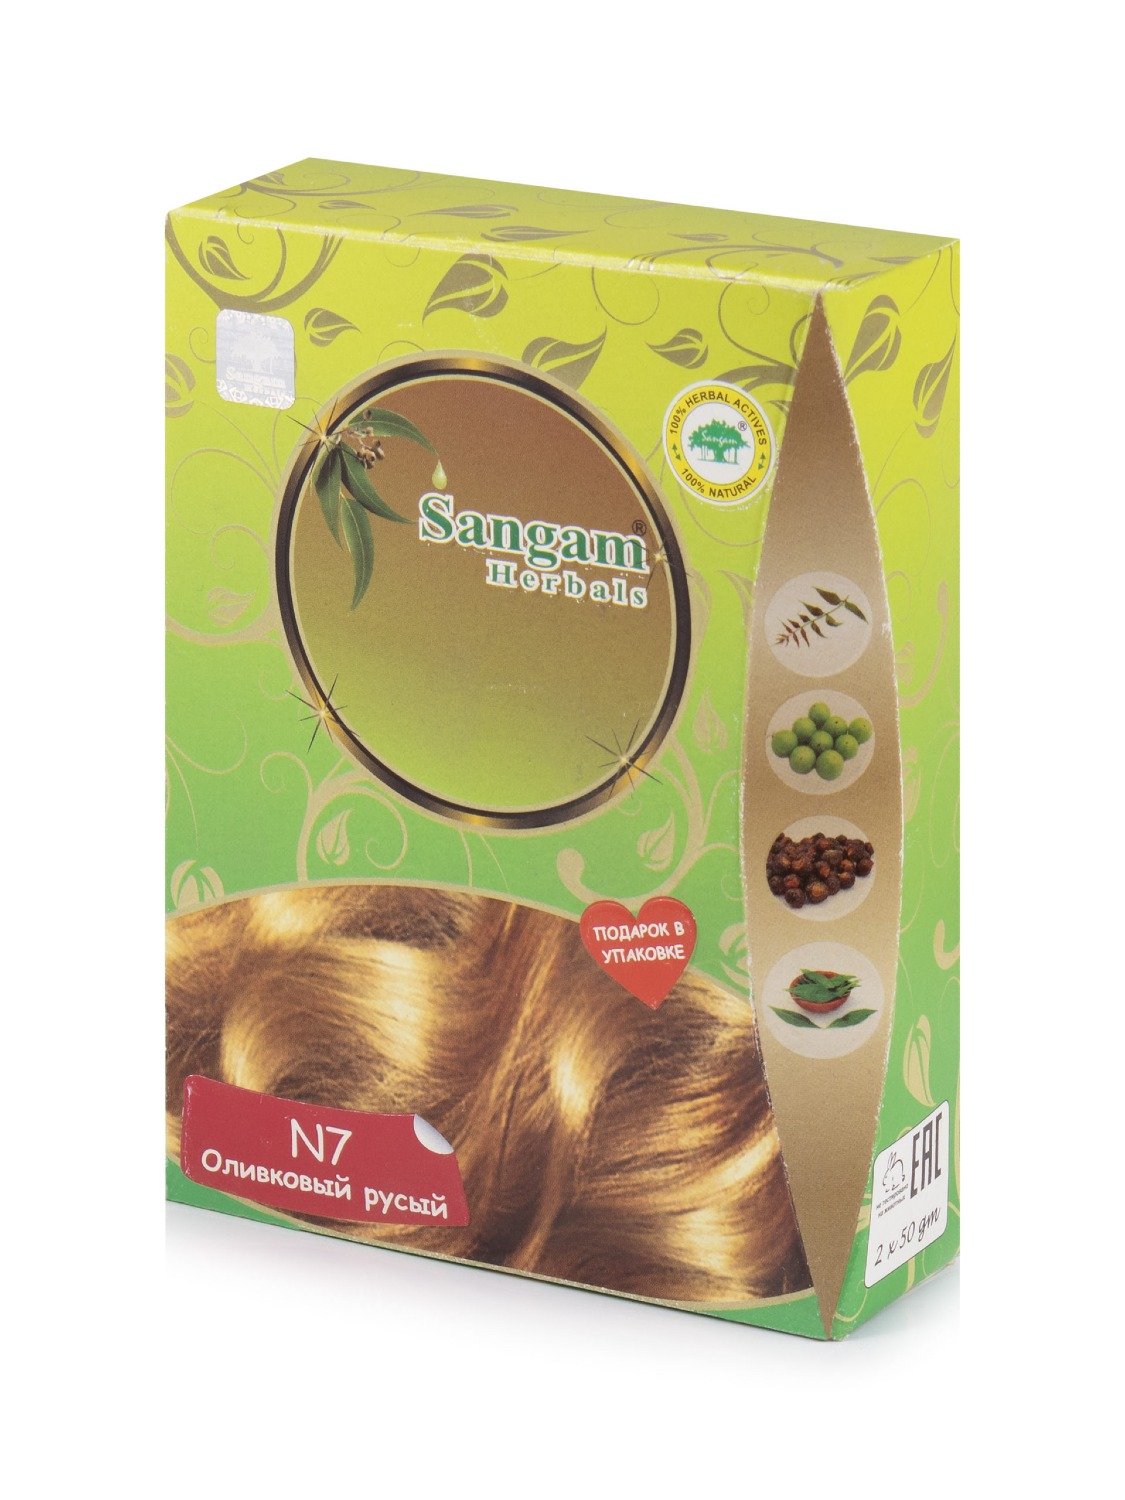 Купить Краска для волос Оливковый русый (N7, Светло-коричневый) в интернет-магазине #store#